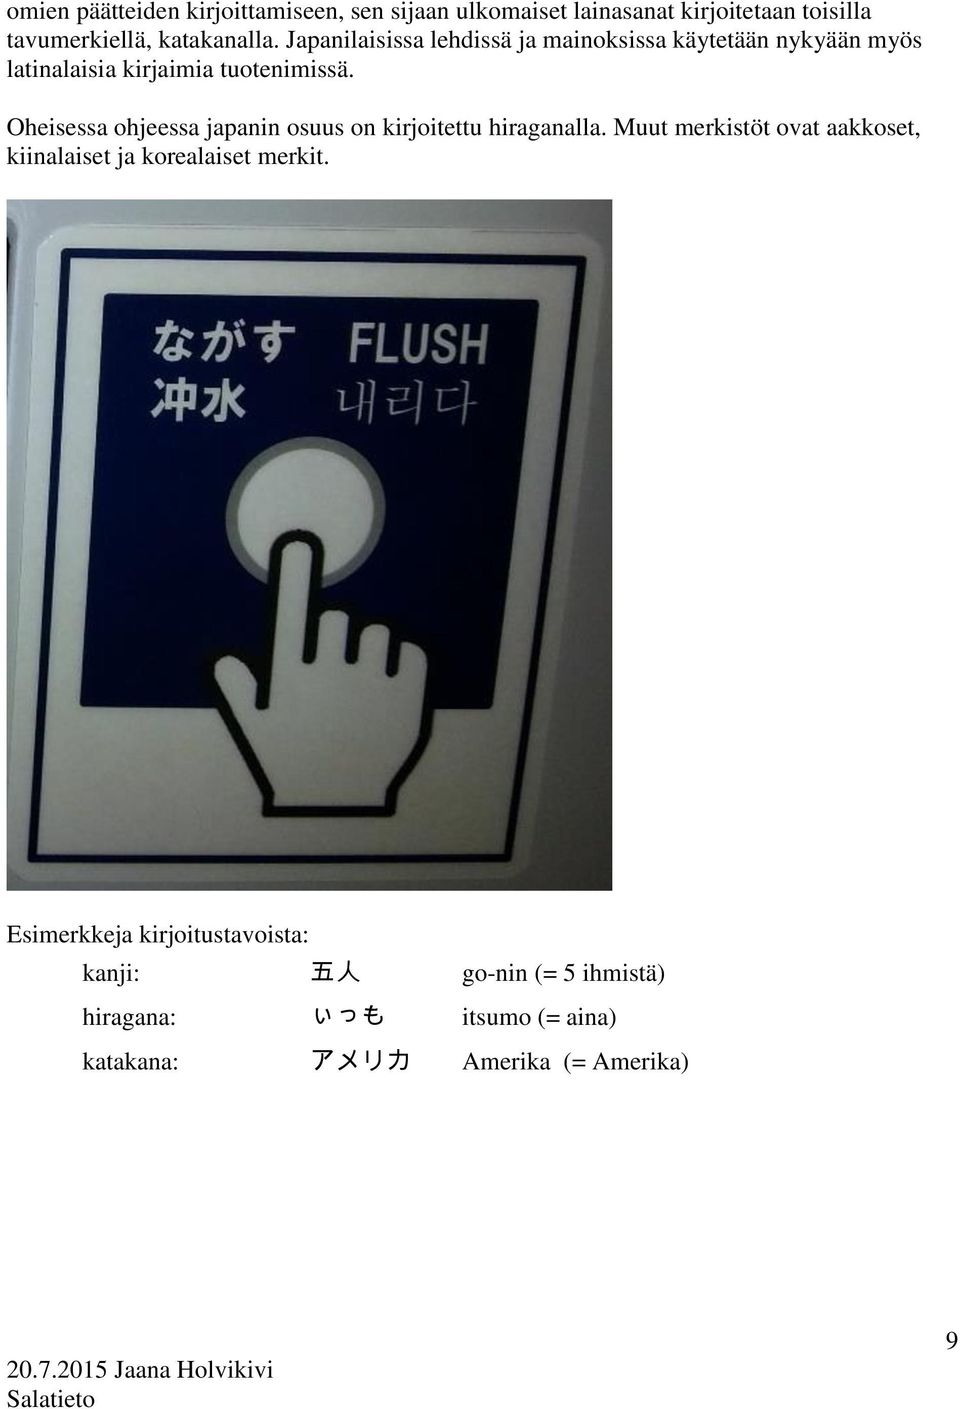 Oheisessa ohjeessa japanin osuus on kirjoitettu hiraganalla.